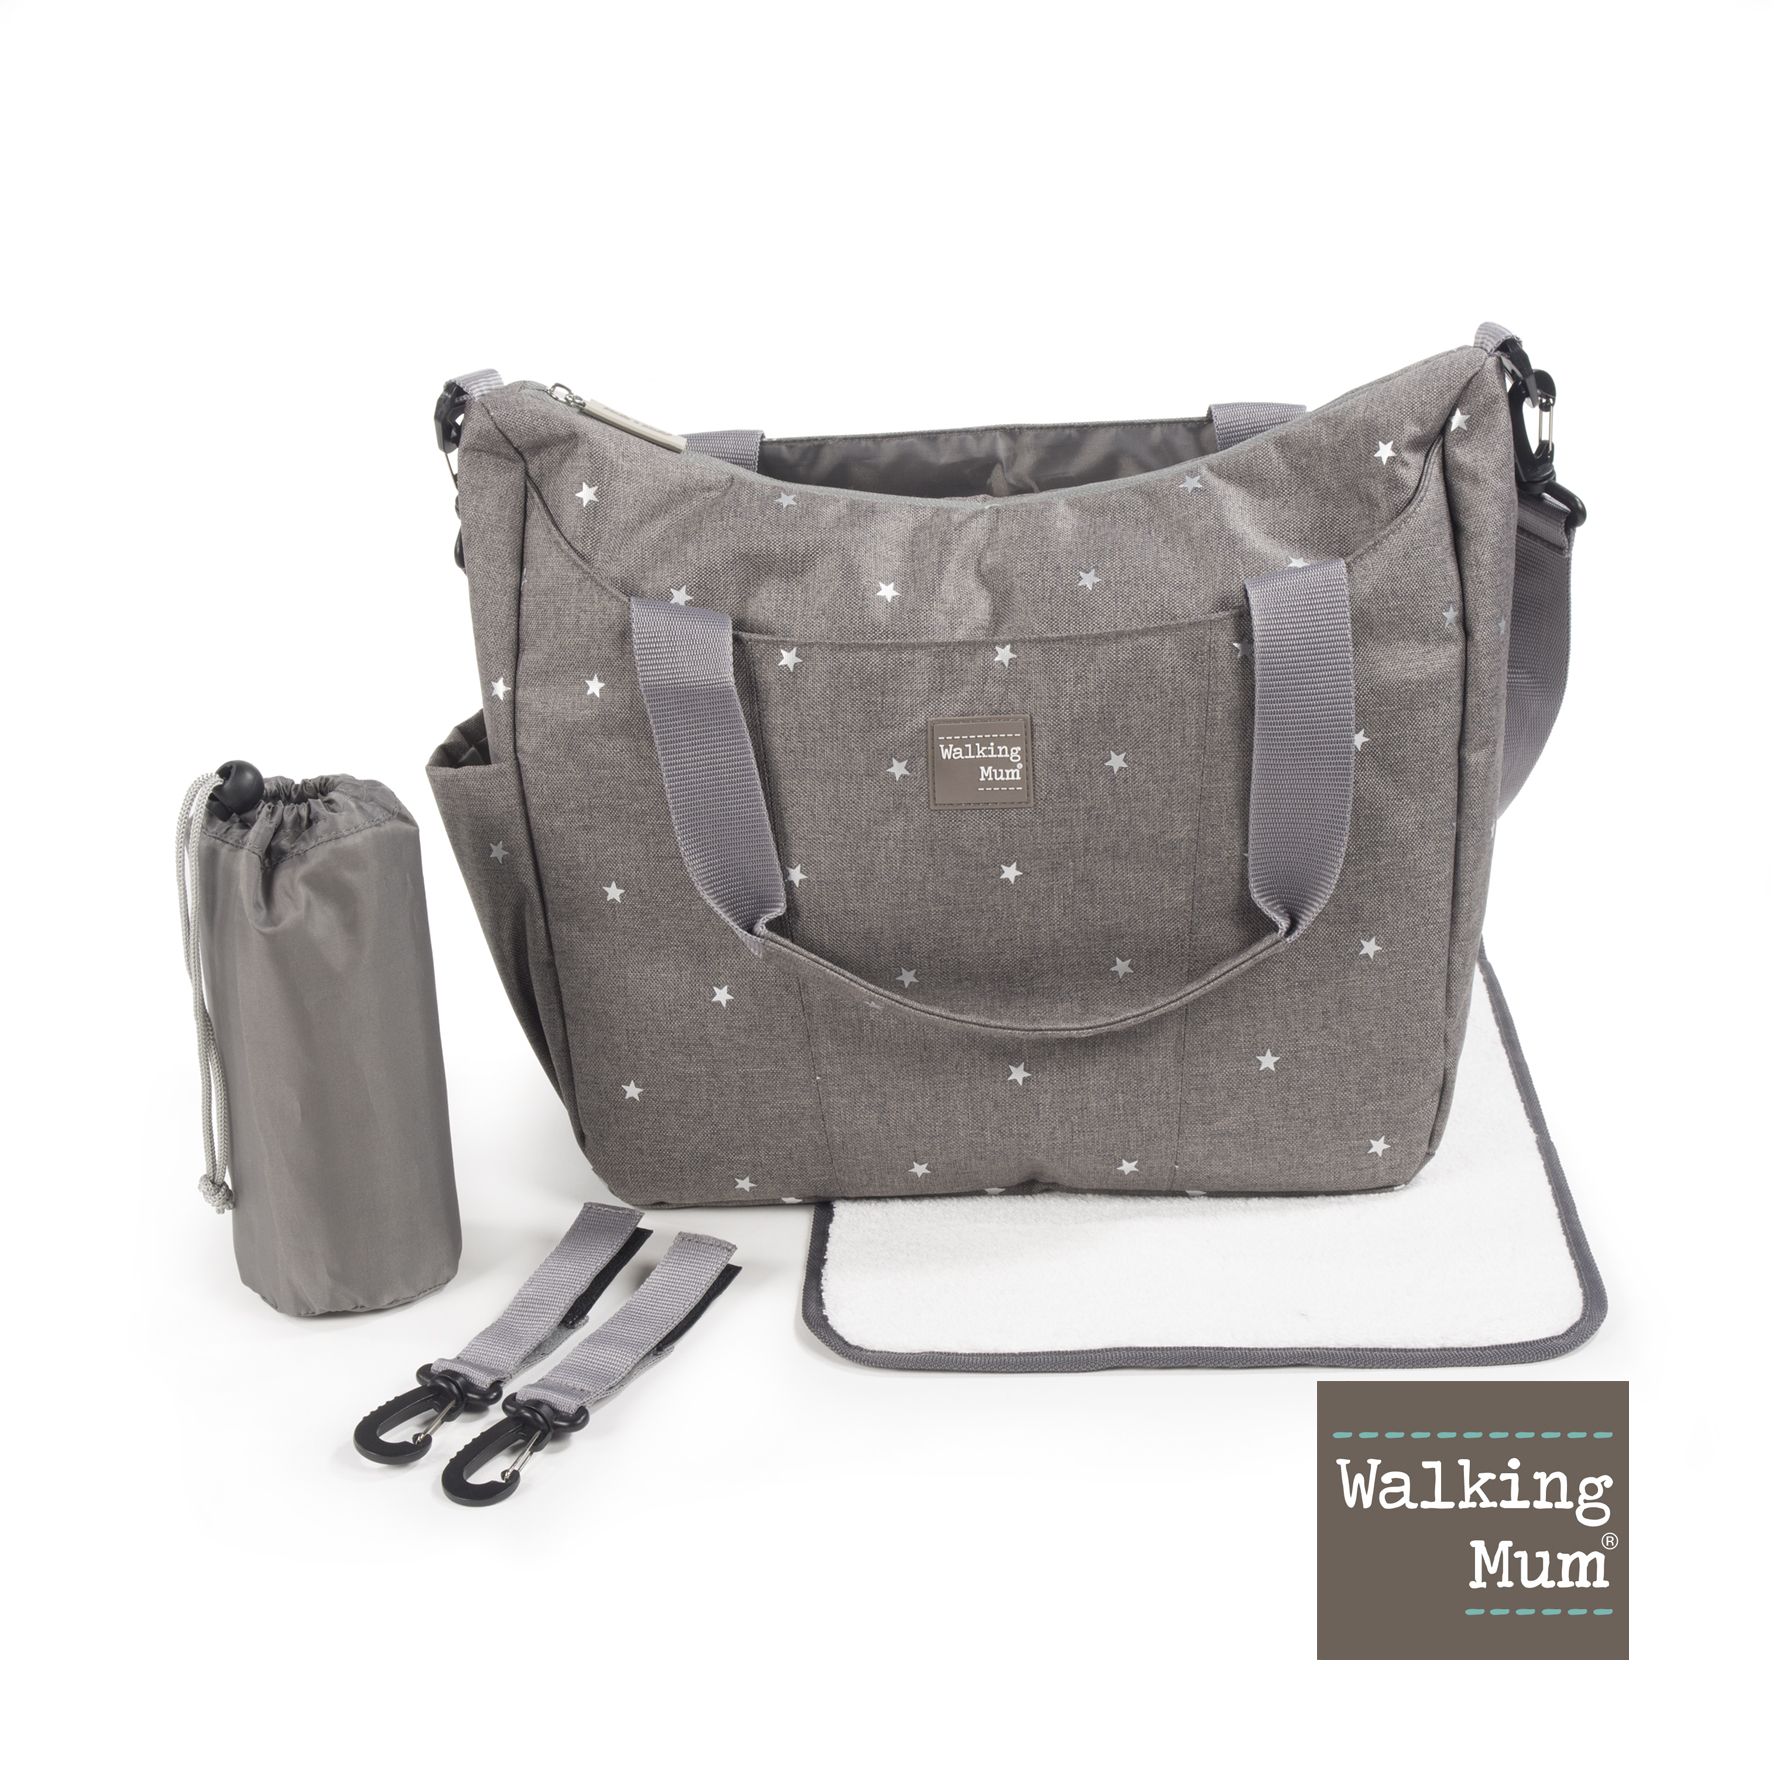 Prebalovacia taška Walking Mum Gaby Grey - sivá s hviezdičkami